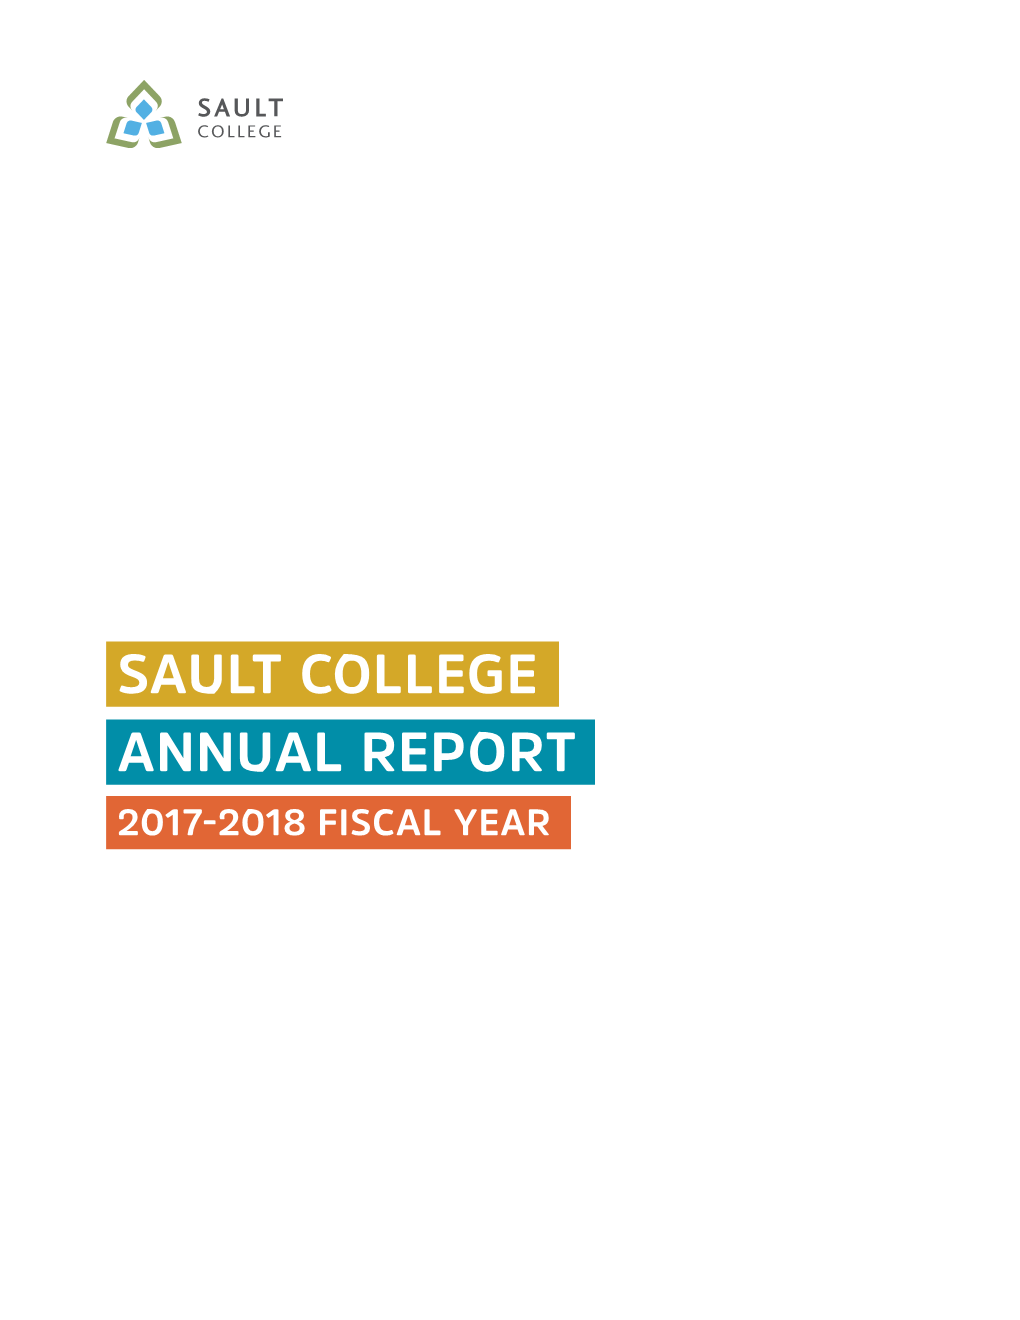 2017-2018 Annual Report.Pdf